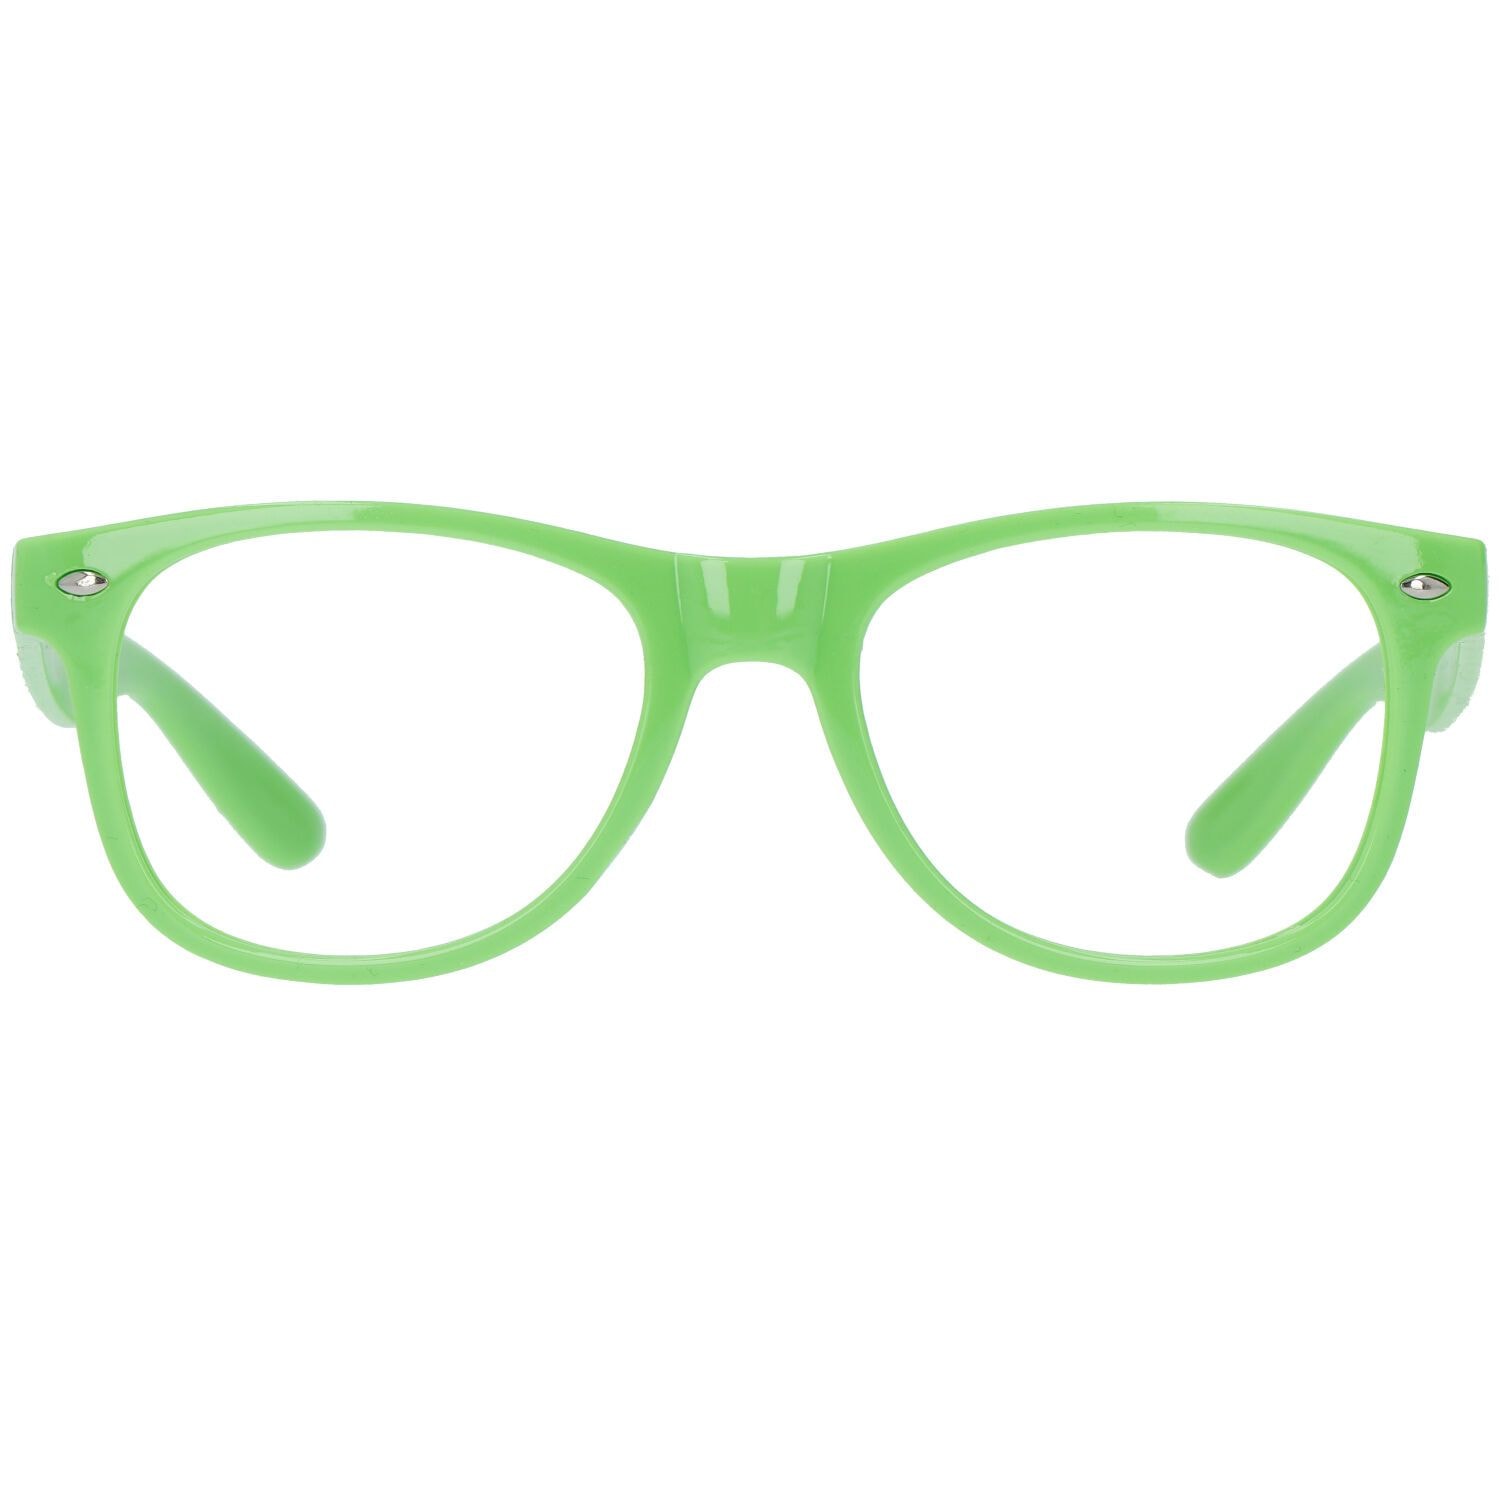 Standaard neon groene bril